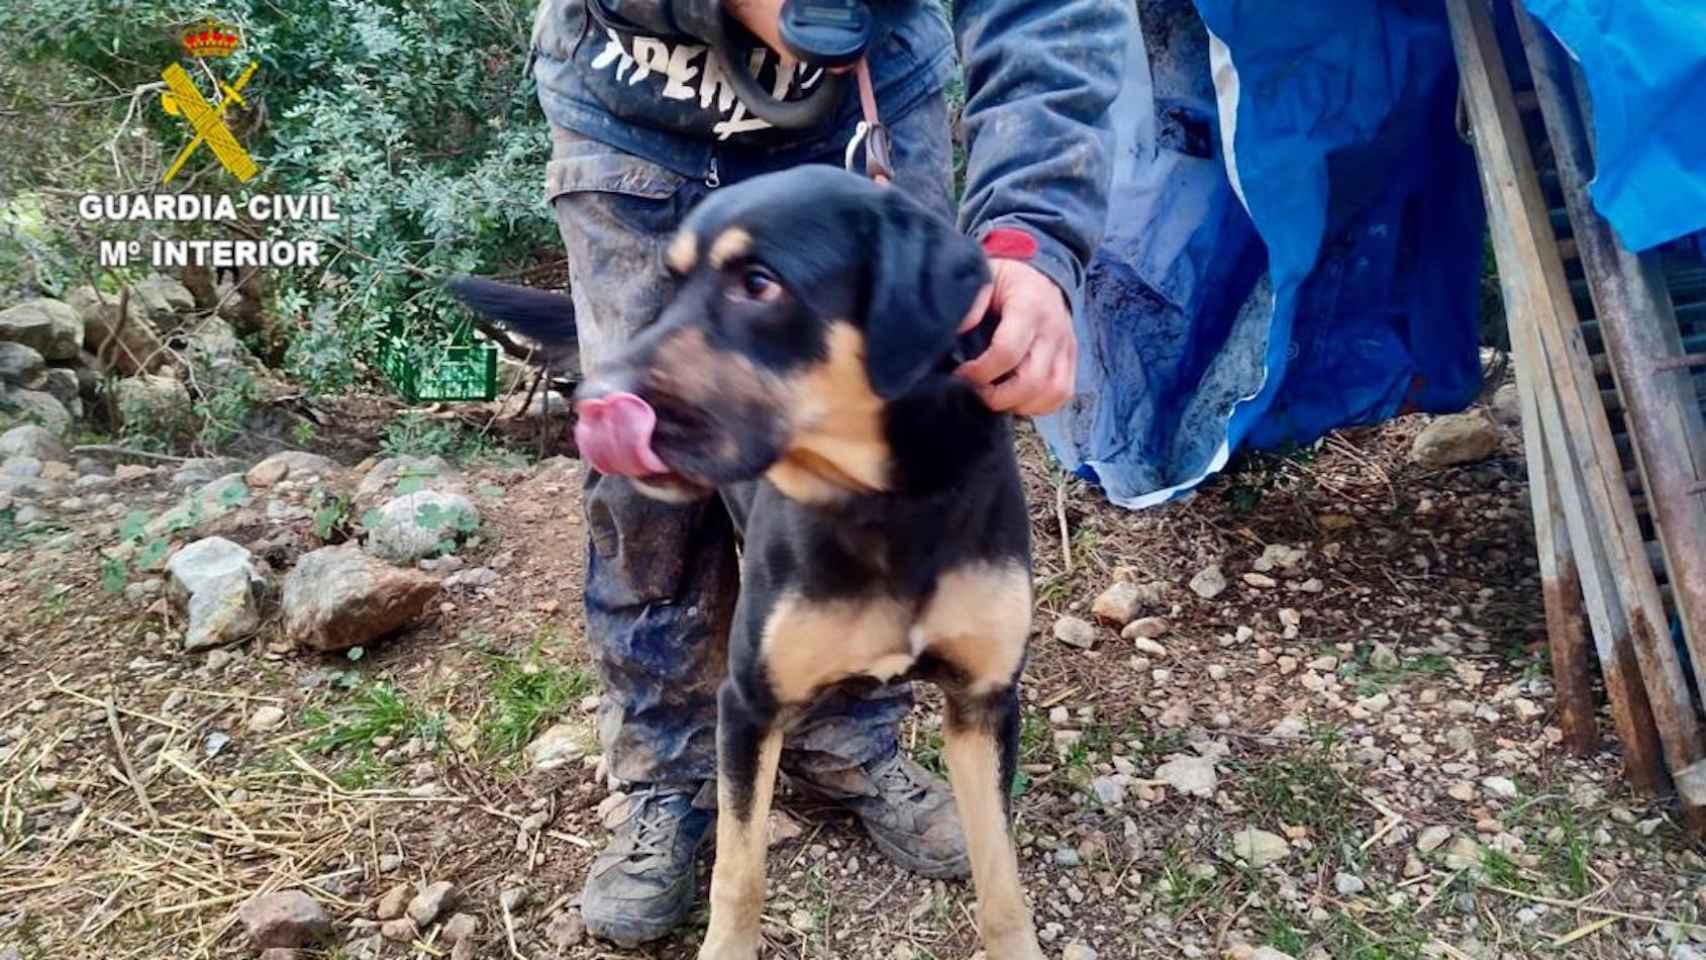 Mai, el perro que han apartado de su dueño por maltrato animal en el Prat del Llobregat / GUARDIA CIVIL